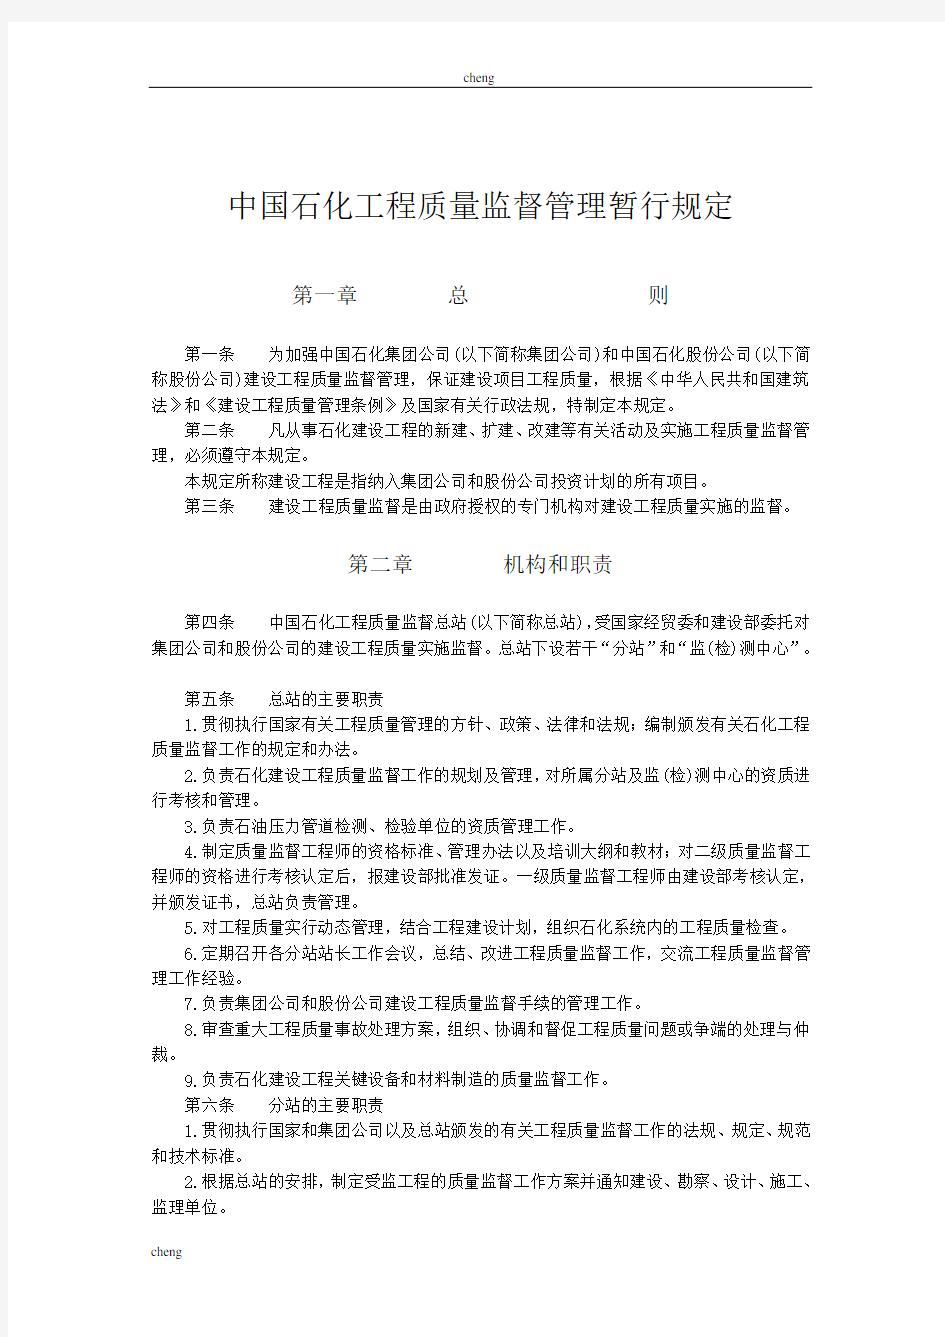 建筑中国石化《工程质量》监督管理暂行规定